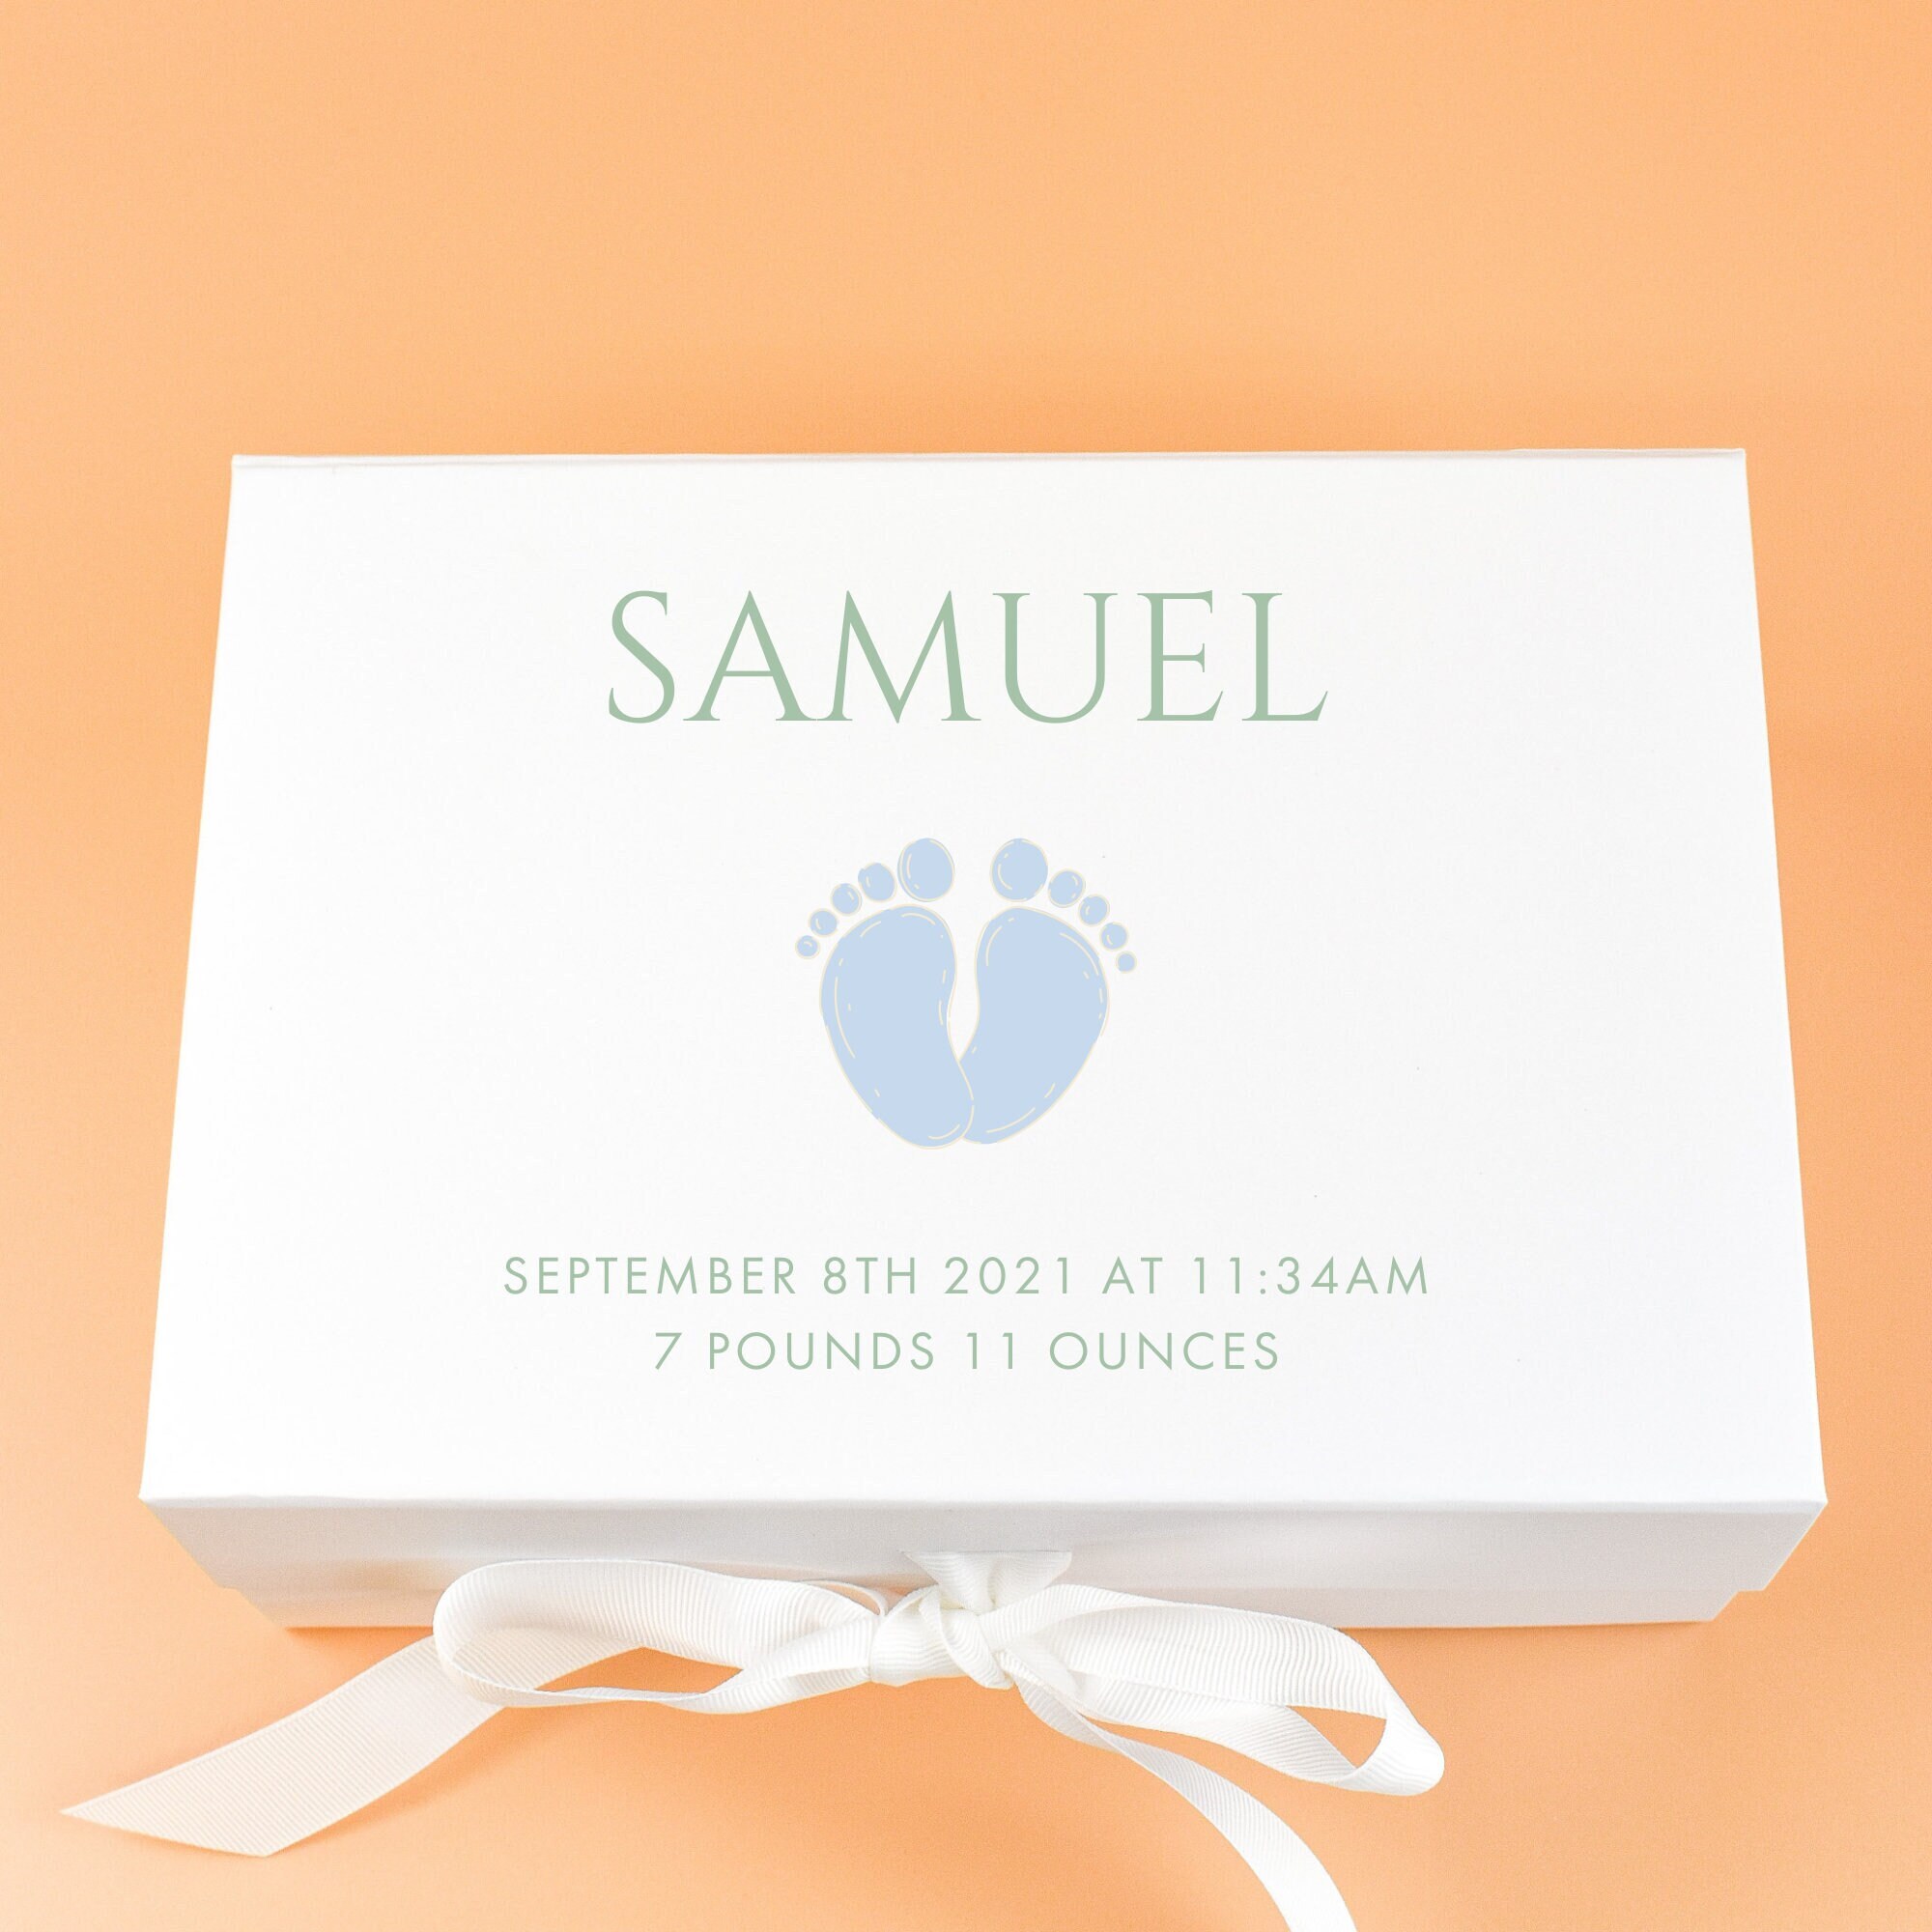 ナチュラルネイビー Floral Heart Wooden Memory Box for Wedding Anniversary  [Personalized Custom Keepsake Box for New Baby, Mother's Day Gift for Mom,  Made in the USA]